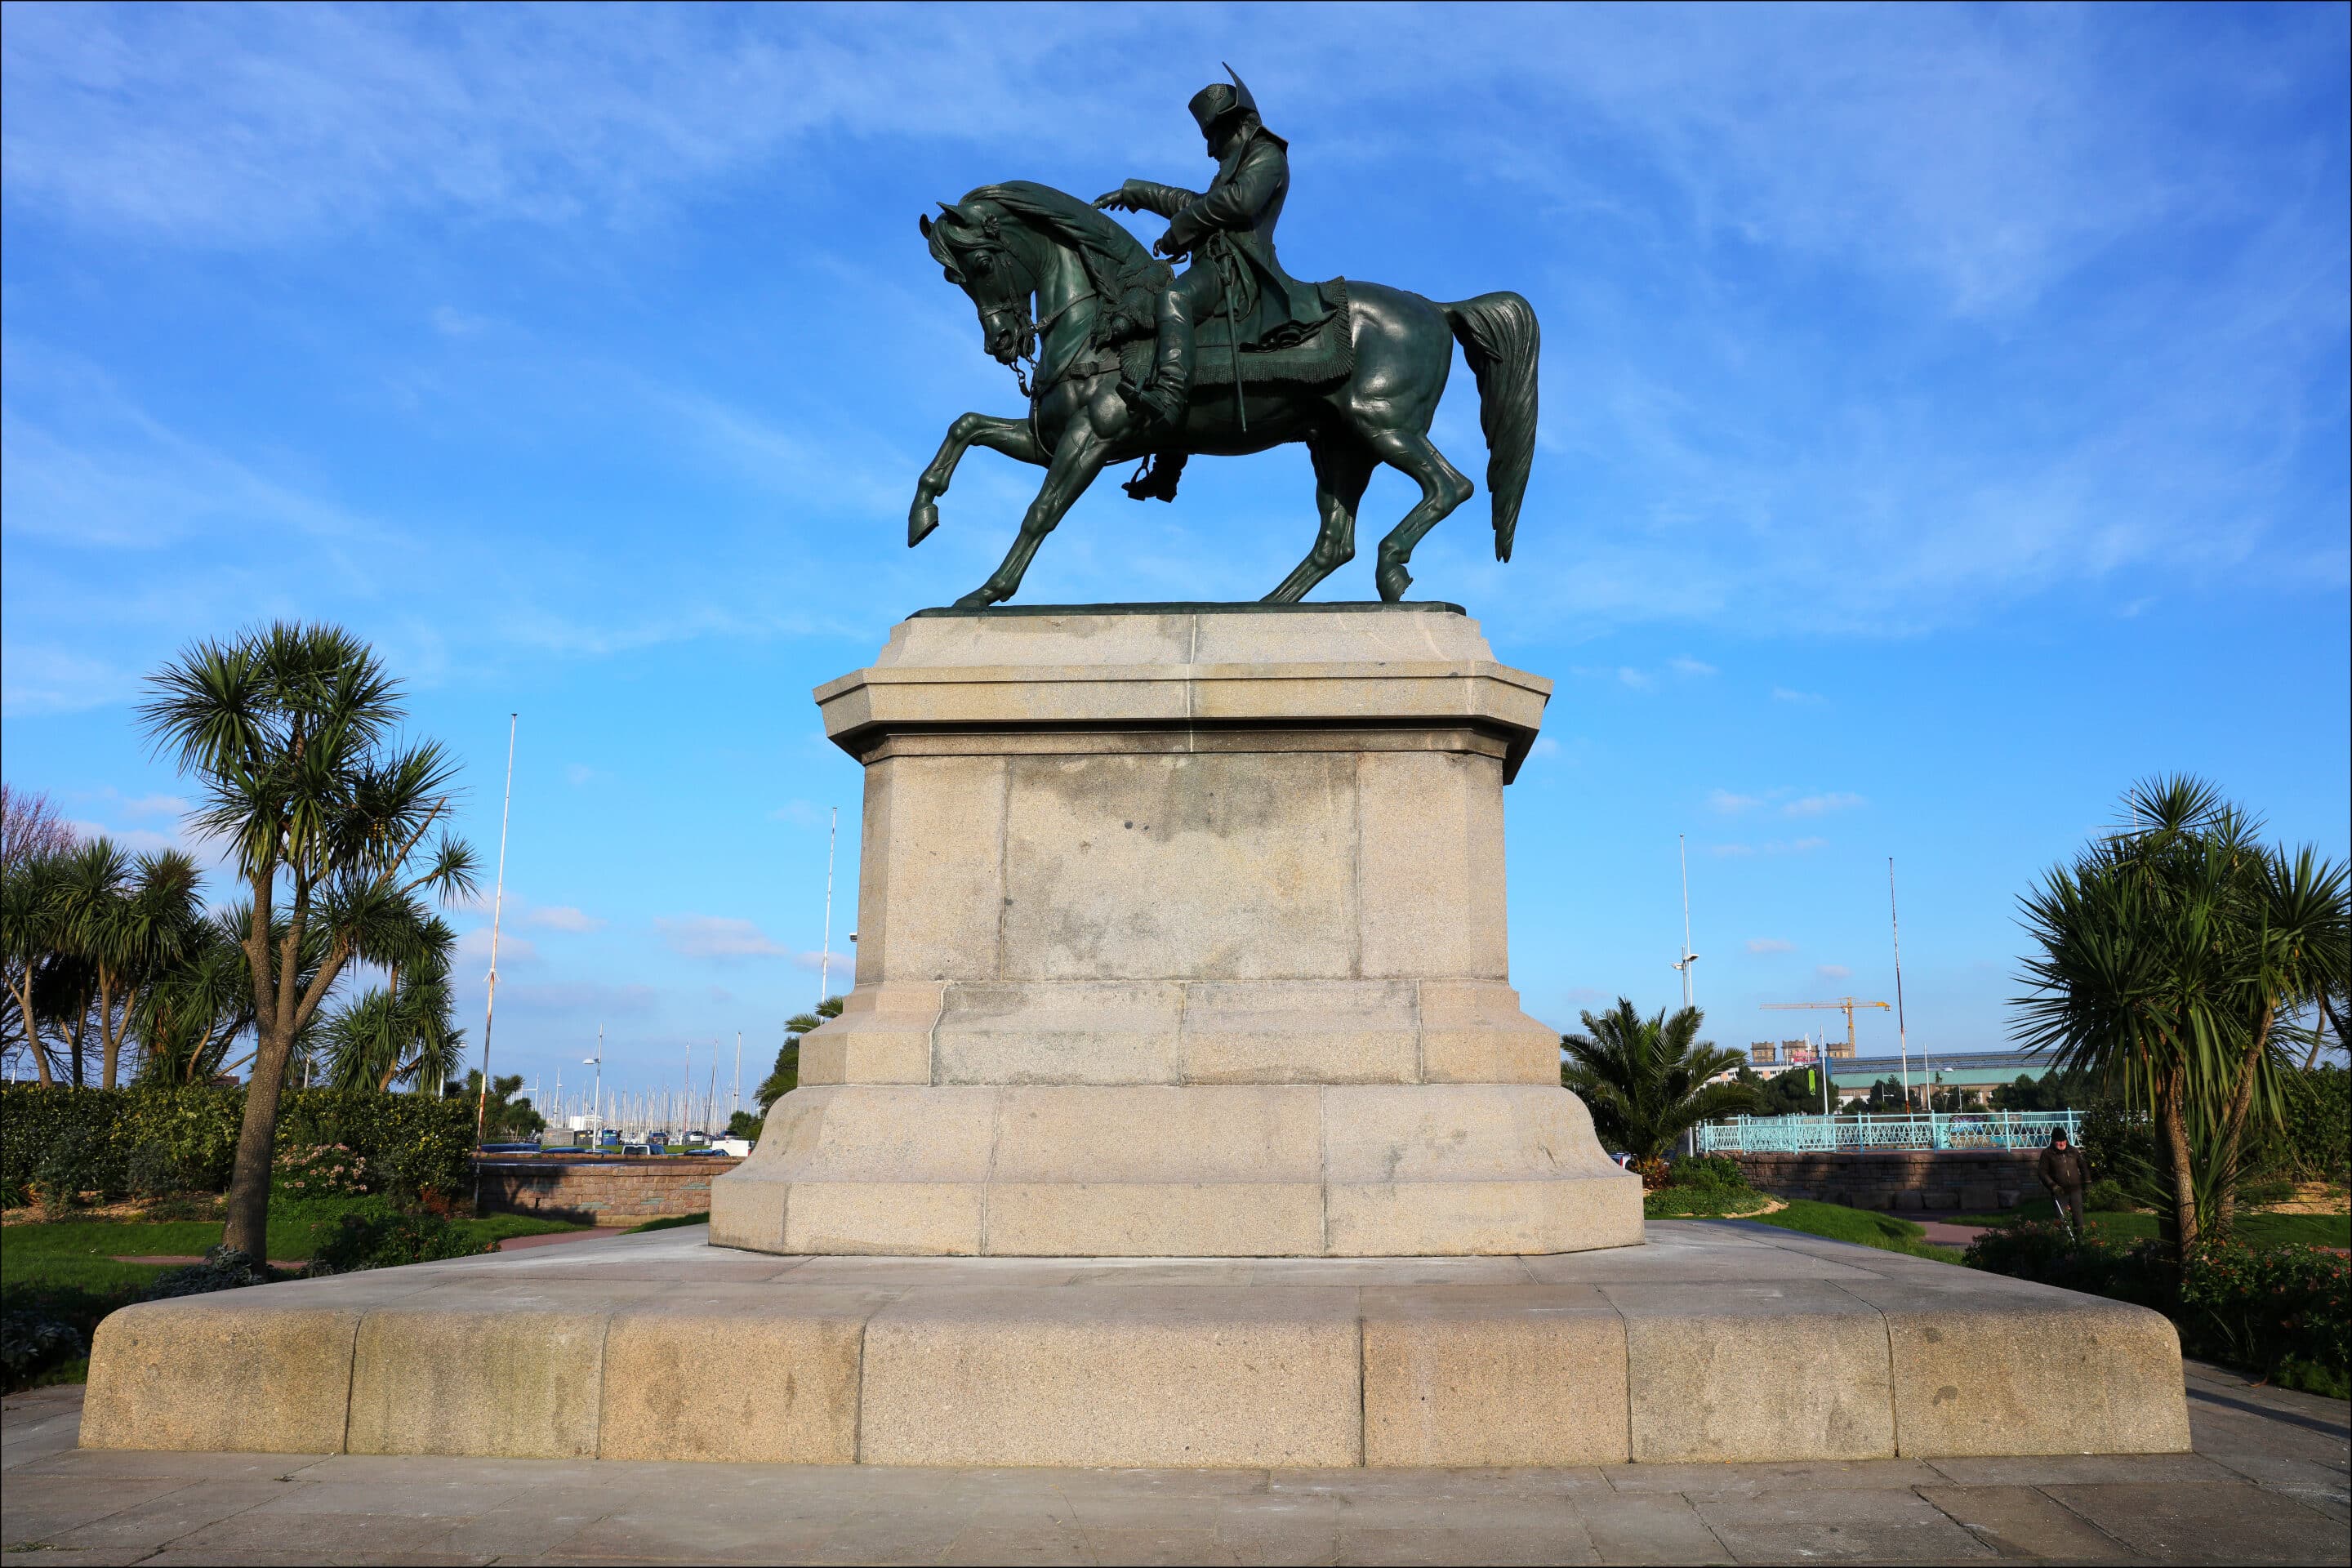 Le monument à Napoléon, œuvre d'Armand Le Véel inaugurée en 1858, est un monument commémoratif de la Manche, situé place Napoléon, à Cherbourg-Octeville.
Wiki commons